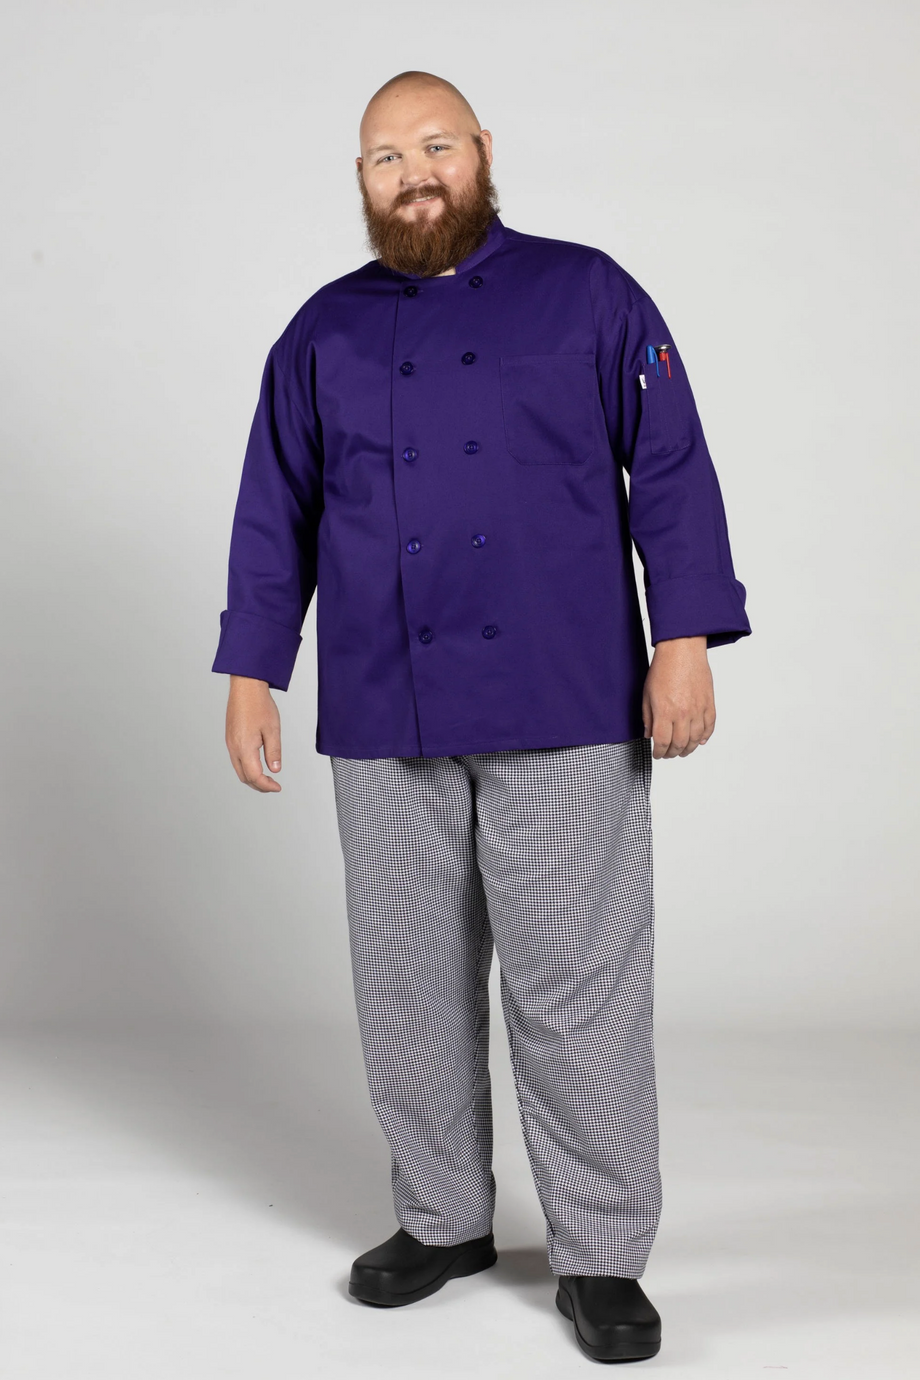 Grape Orleans Chef Coat